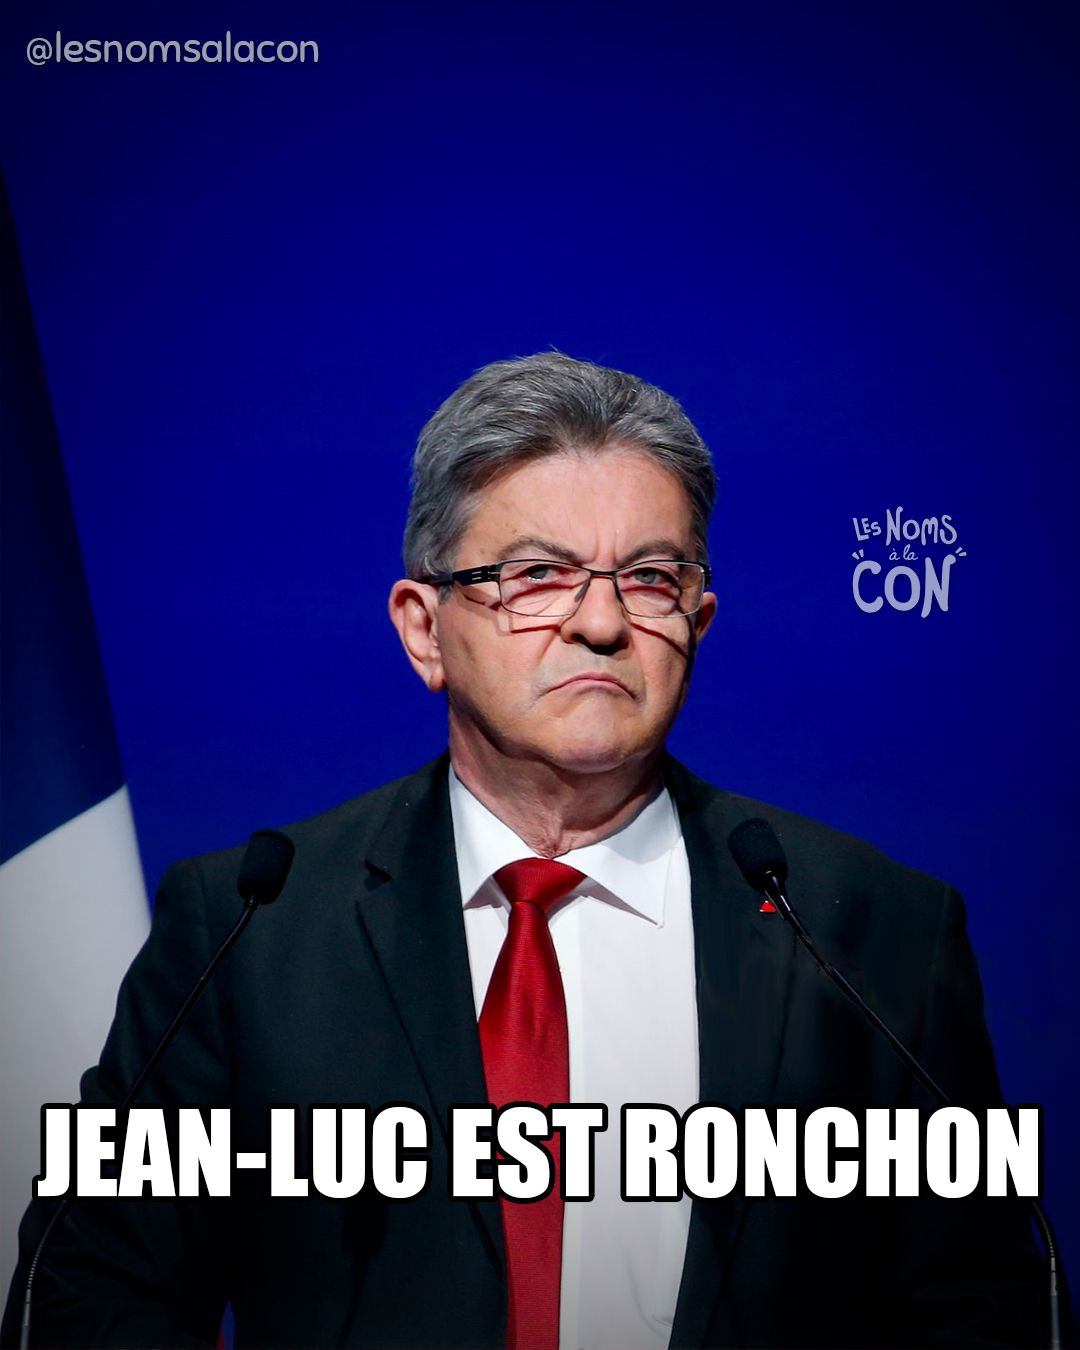 Jean-Luc Est ronchon